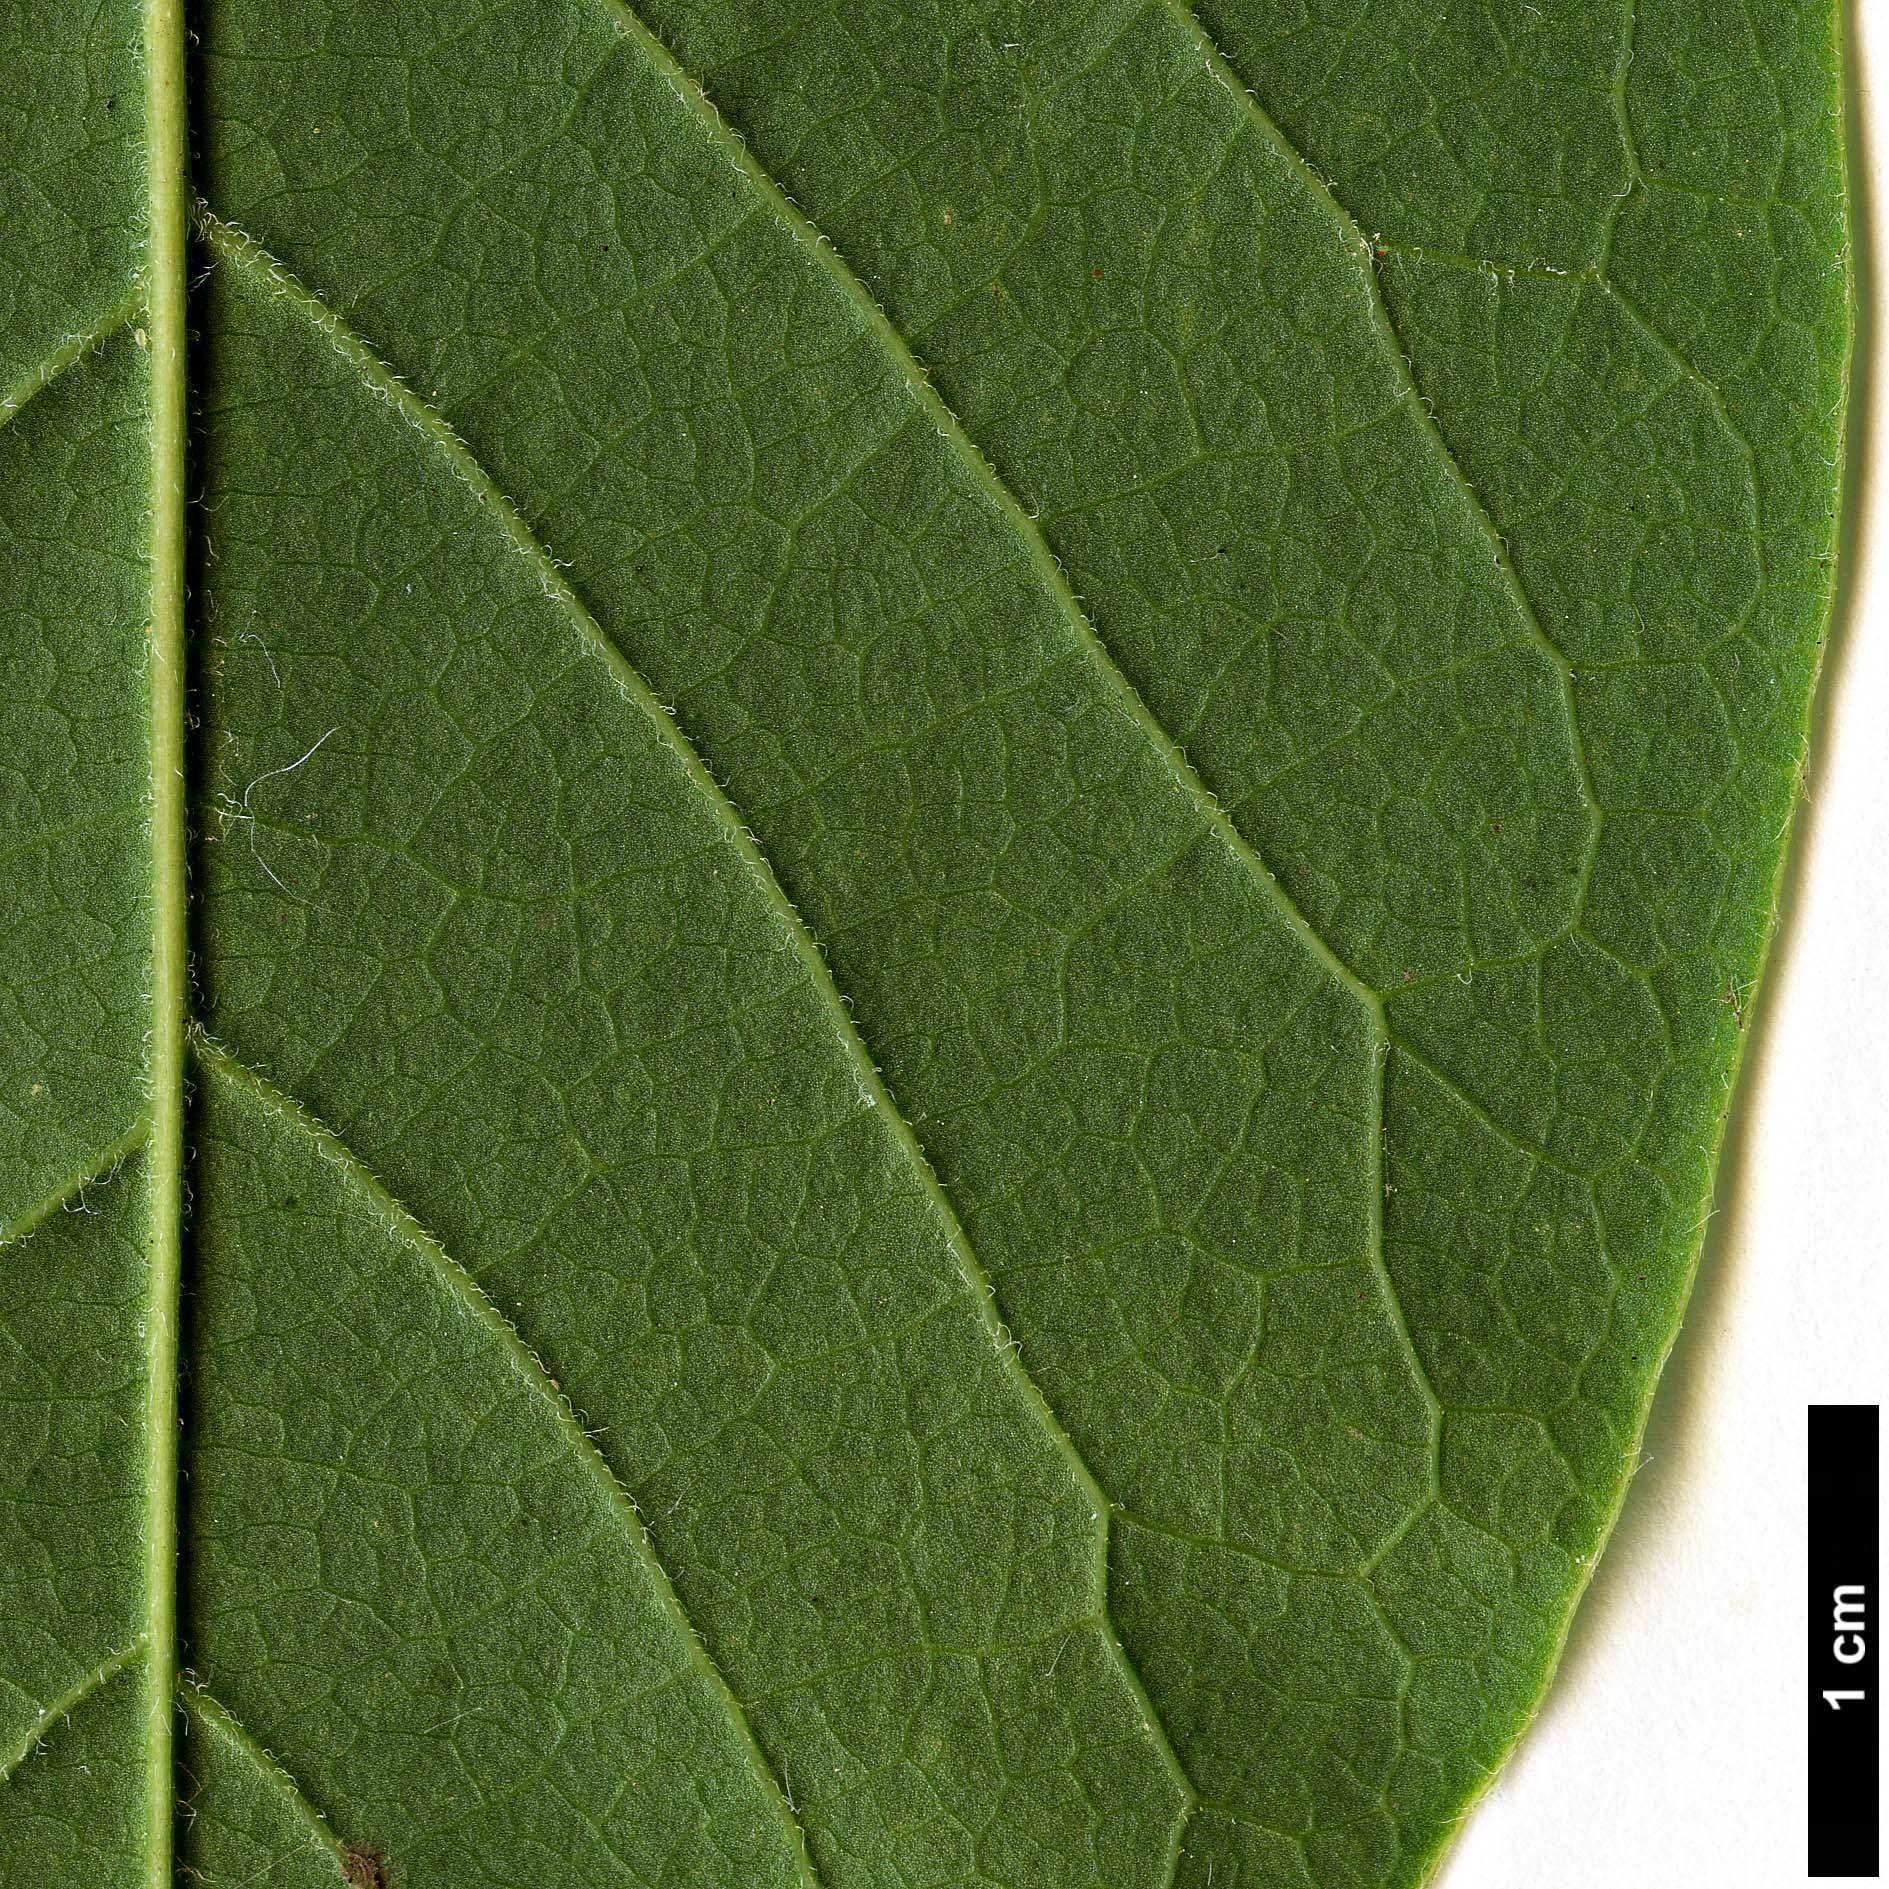 High resolution image: Family: Magnoliaceae - Genus: Magnolia - Taxon: ×veitchii - SpeciesSub: 'Peter Veitch' (M.campbellii × M.denudata)